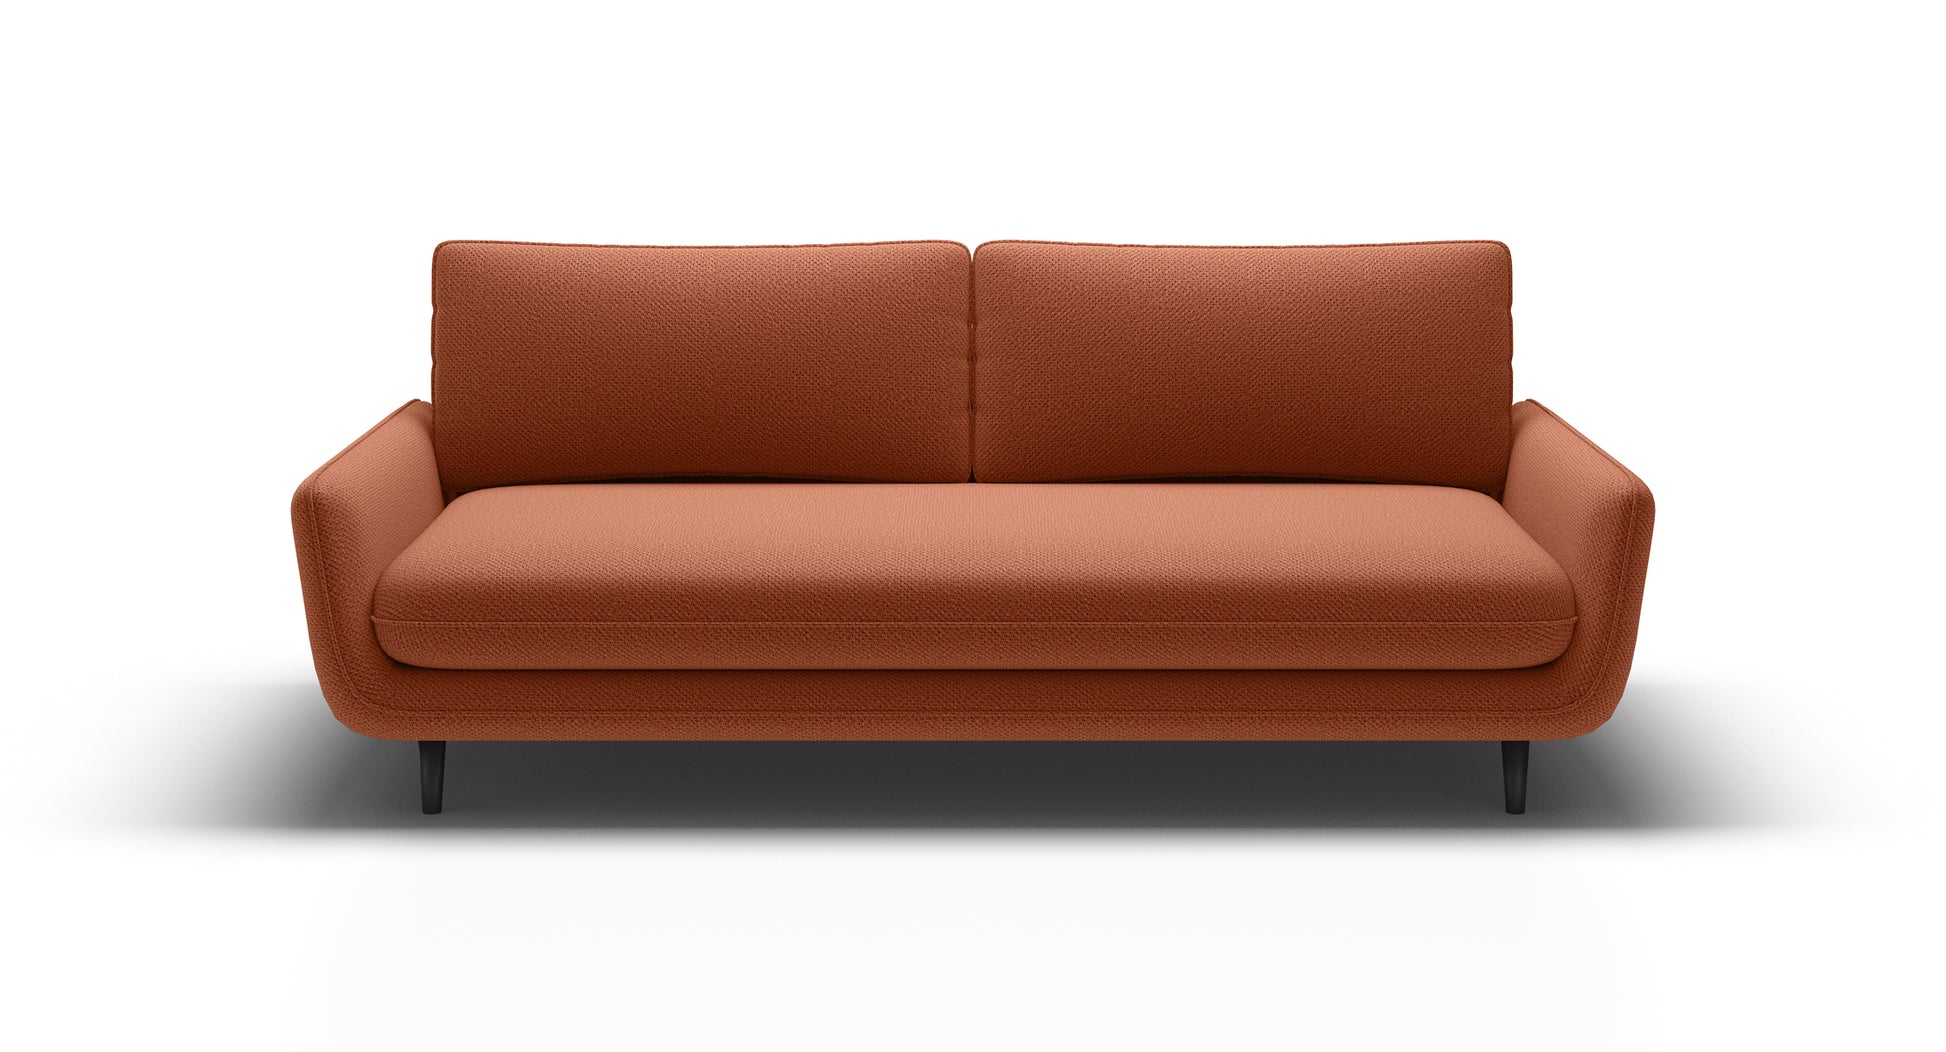 Kanapa sofa rozkładana SOLANO w wyrazistym kolorze na ciemnych nóżkach, typu słupek.